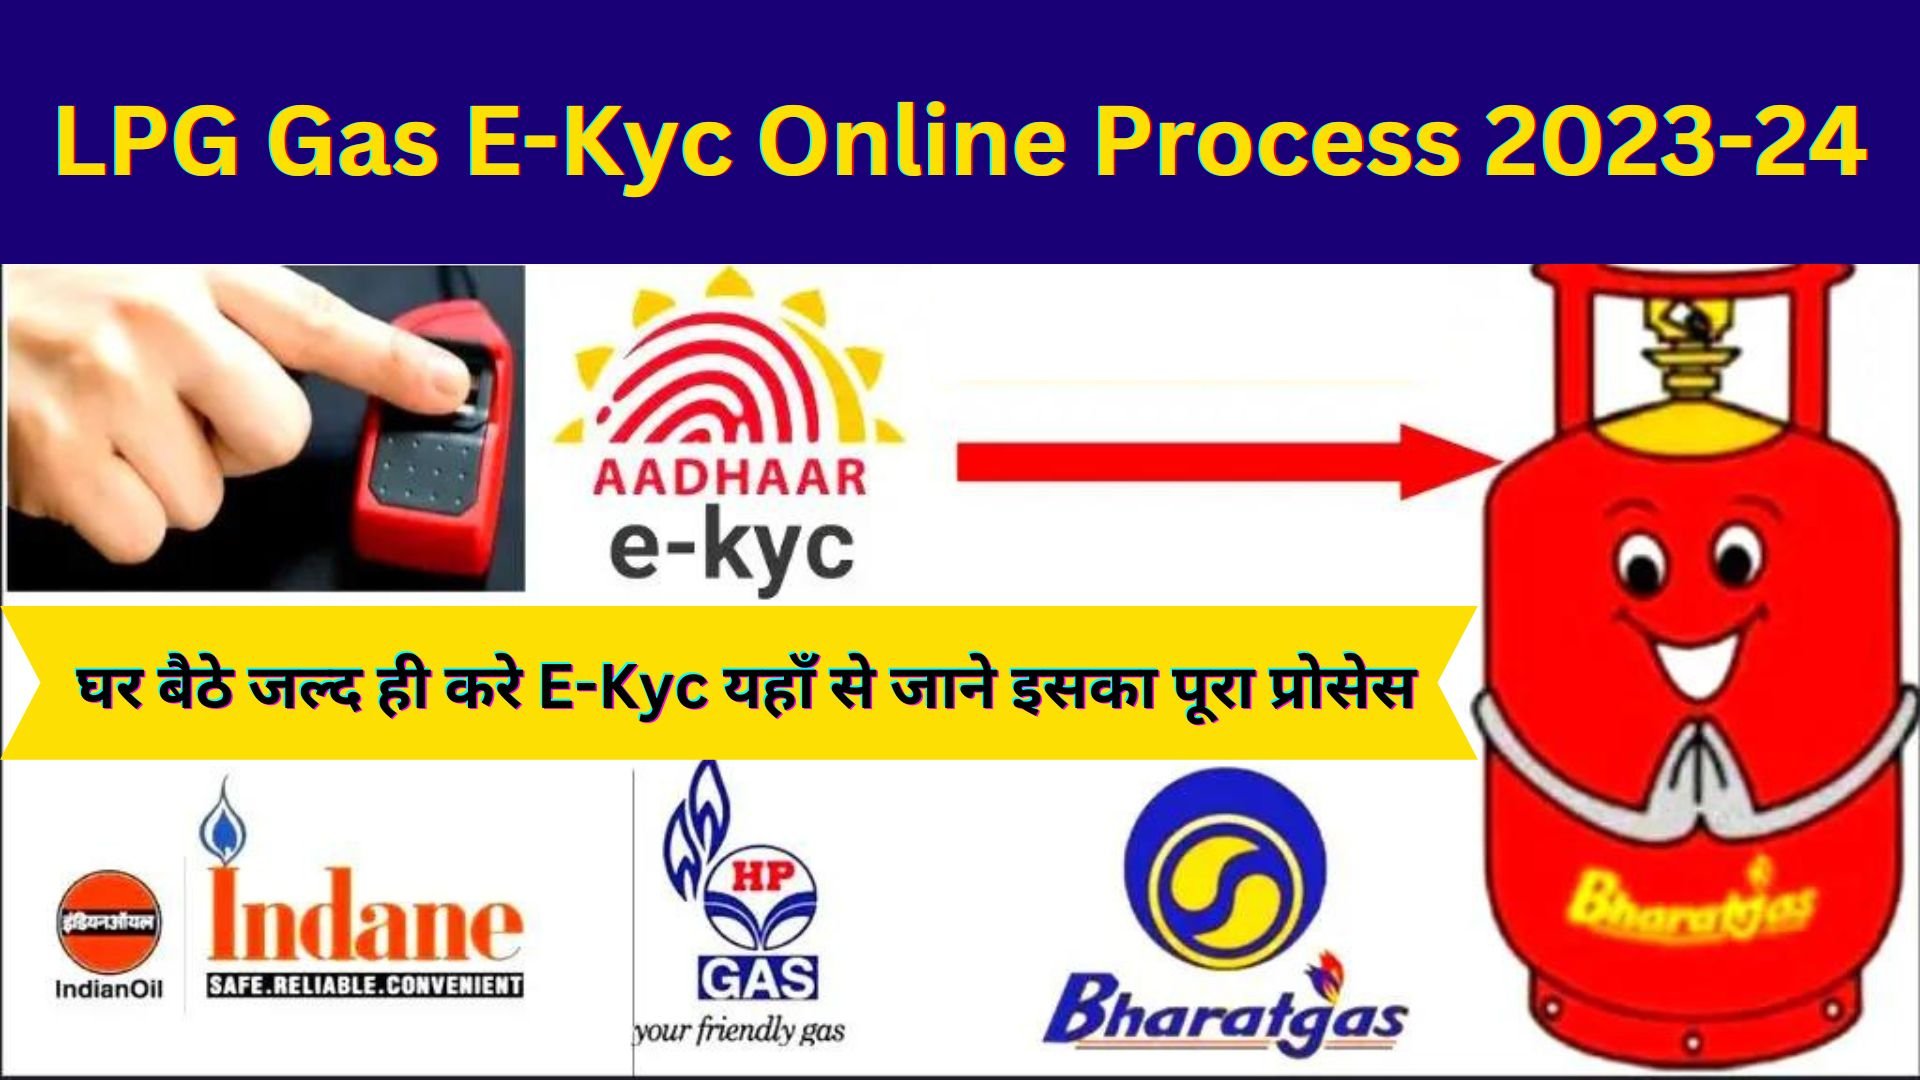 LPG Gas E-Kyc Online Process 2023-24: एलपीजी गैस कनेक्शन की ई-केवाईसी घर बैठे जल्द ही करे यहाँ से जाने इसका पूरा प्रोसेस